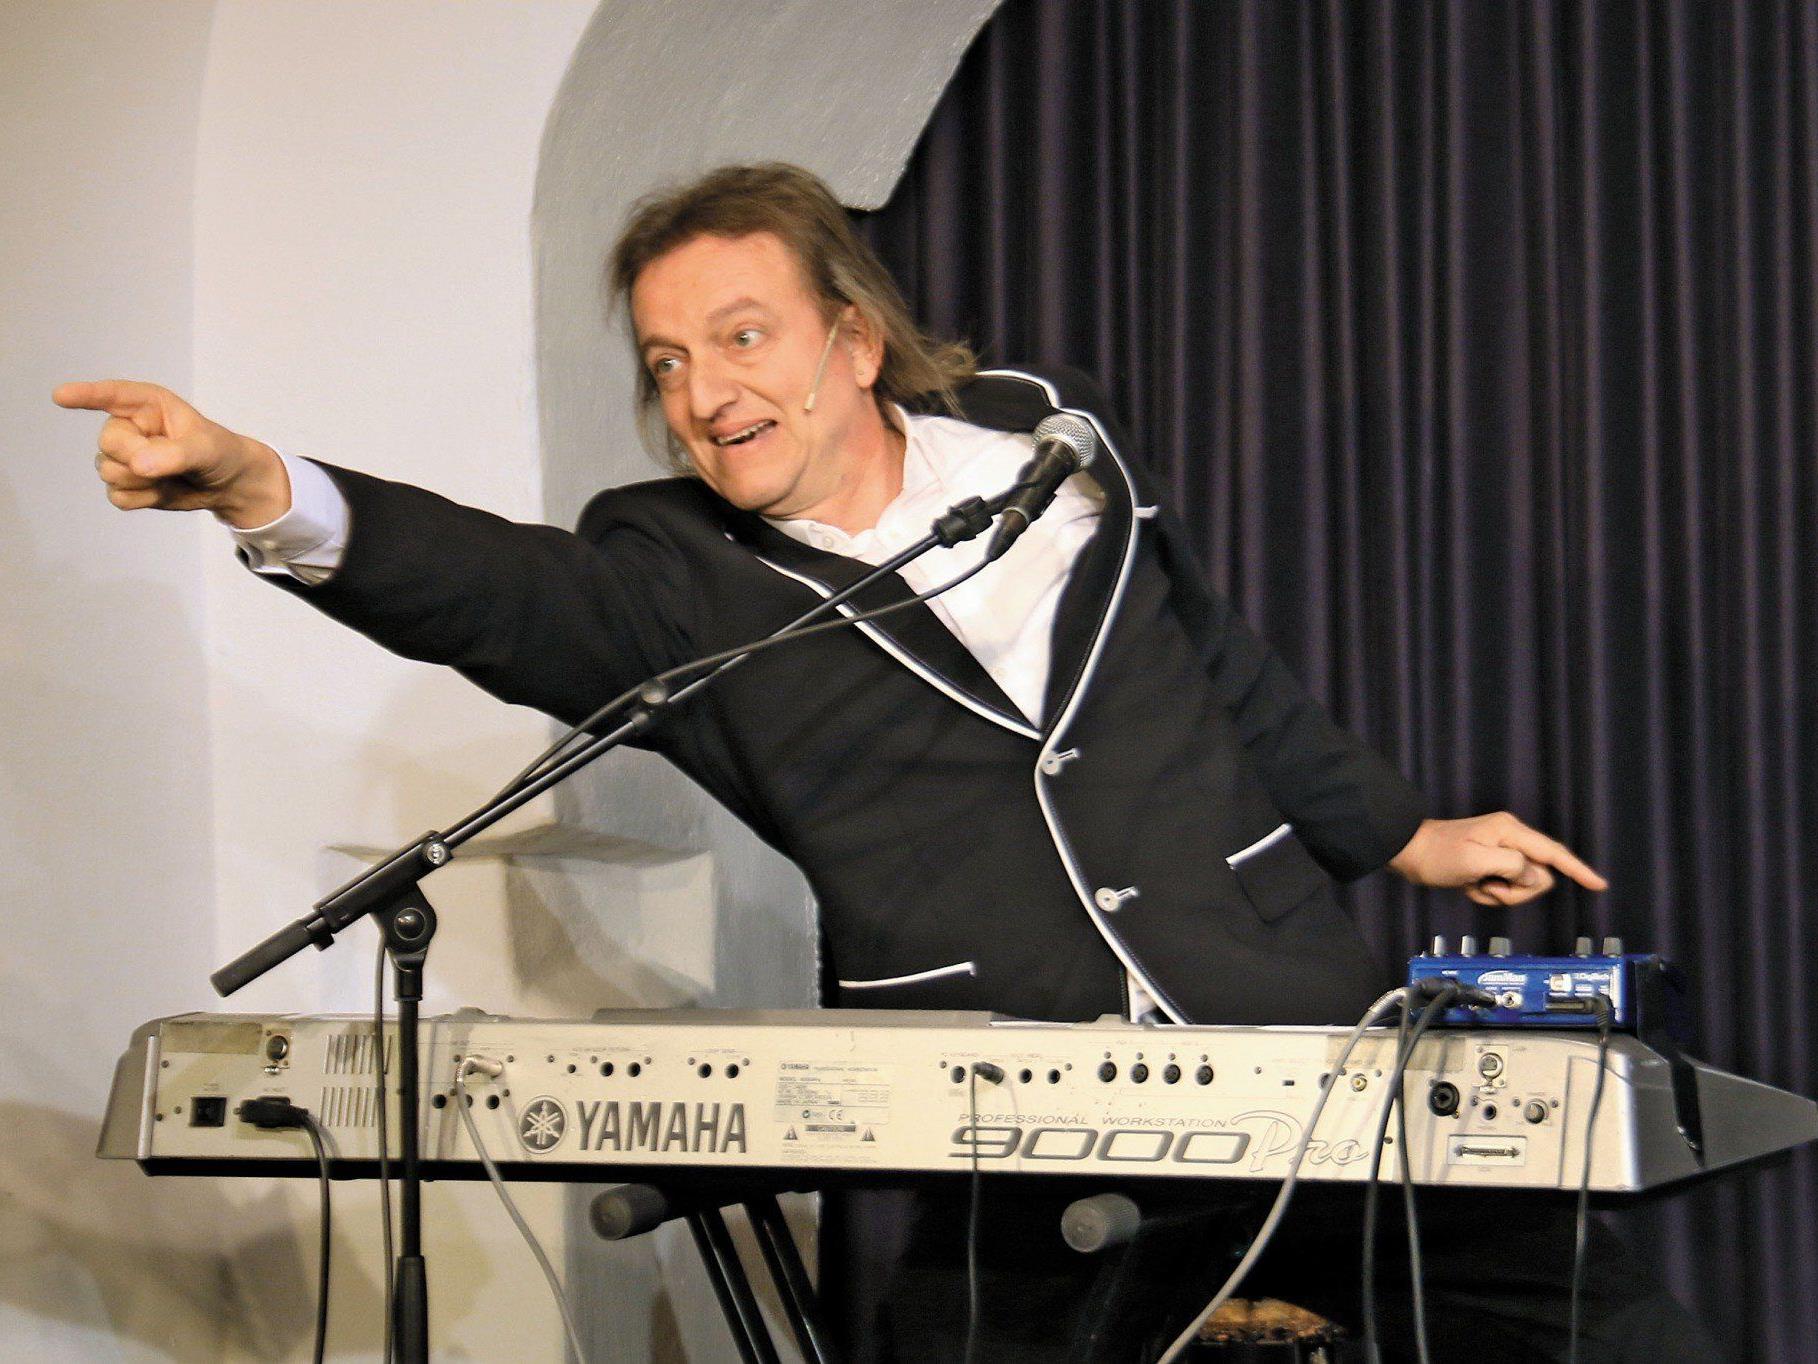 Musik-Comedian Markus Linder in Aktion.